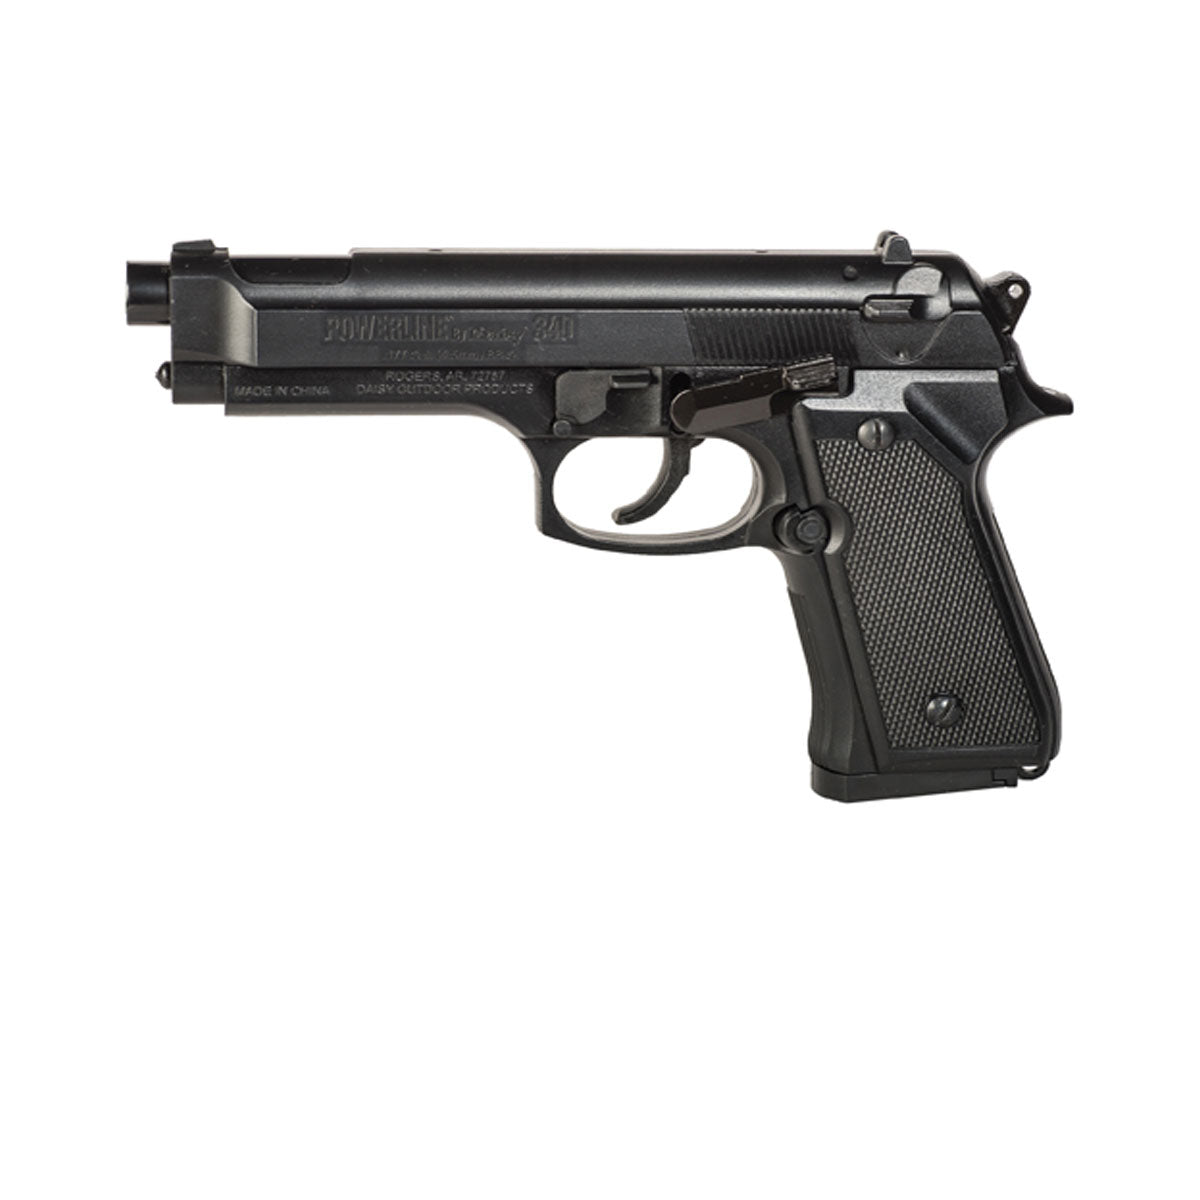 Daisy Model 340 BB Pistol